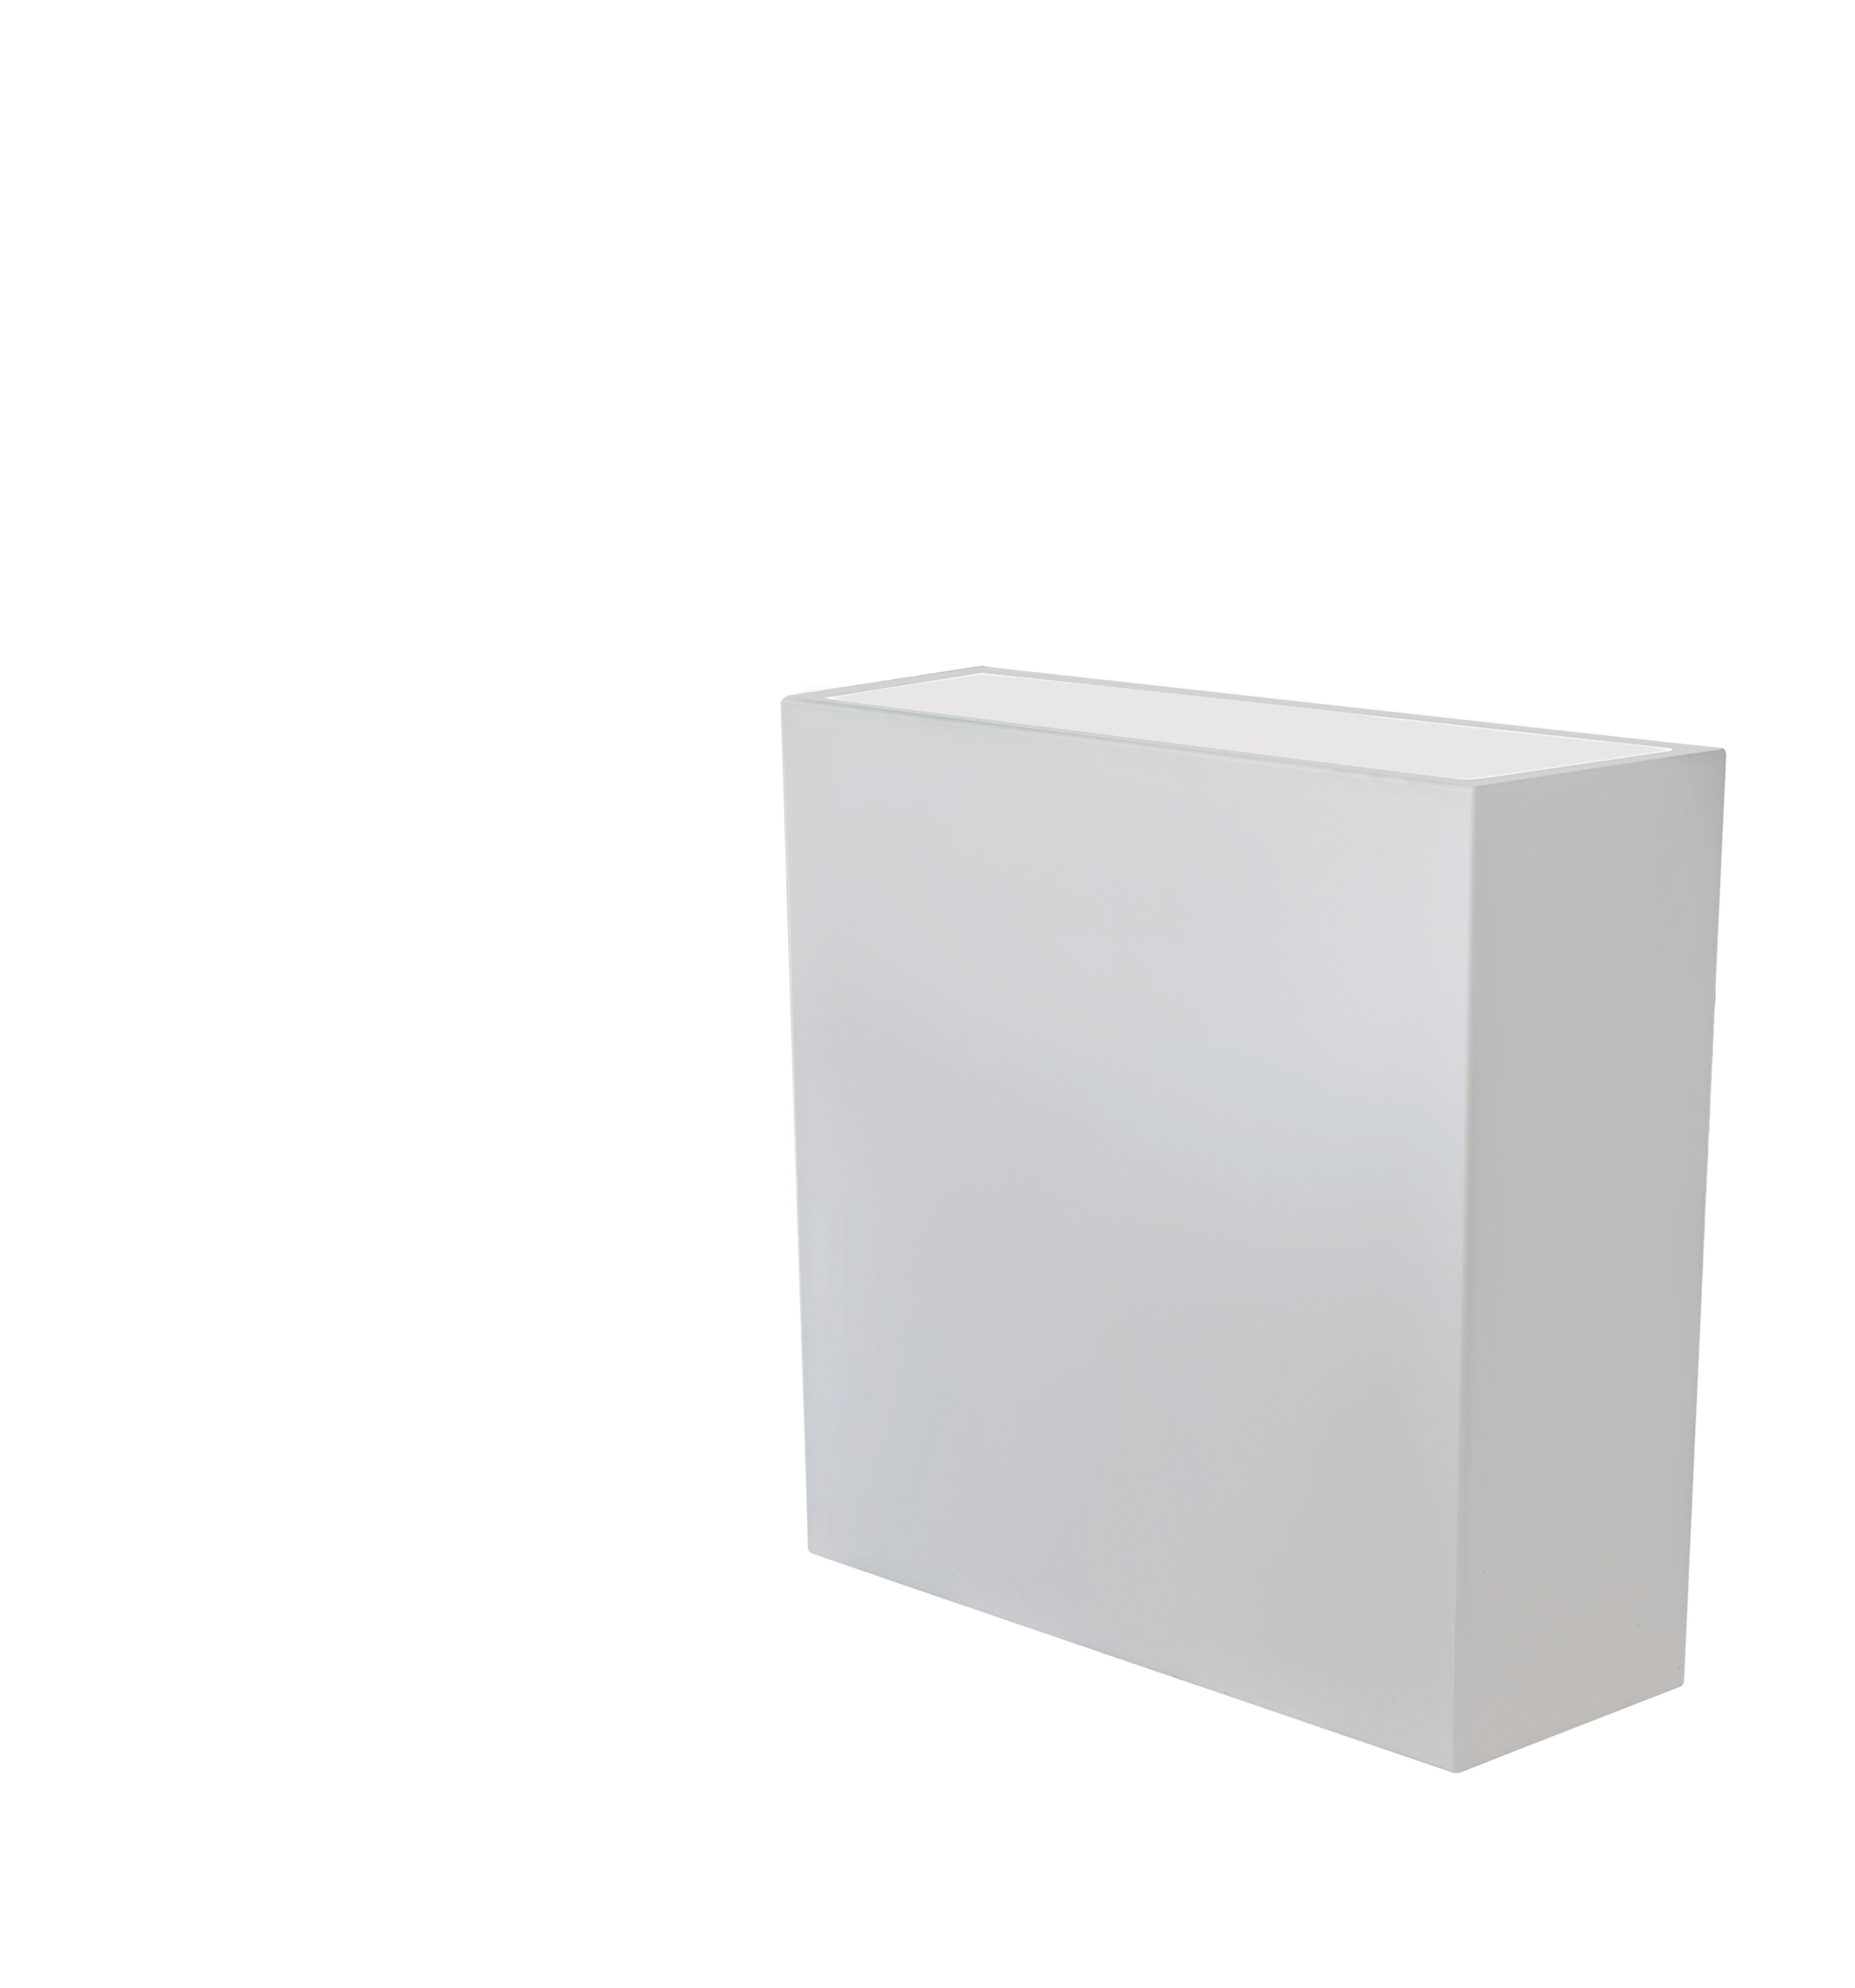 Maceta de polietileno de alta densidad newgarden blanco 80x80 cm